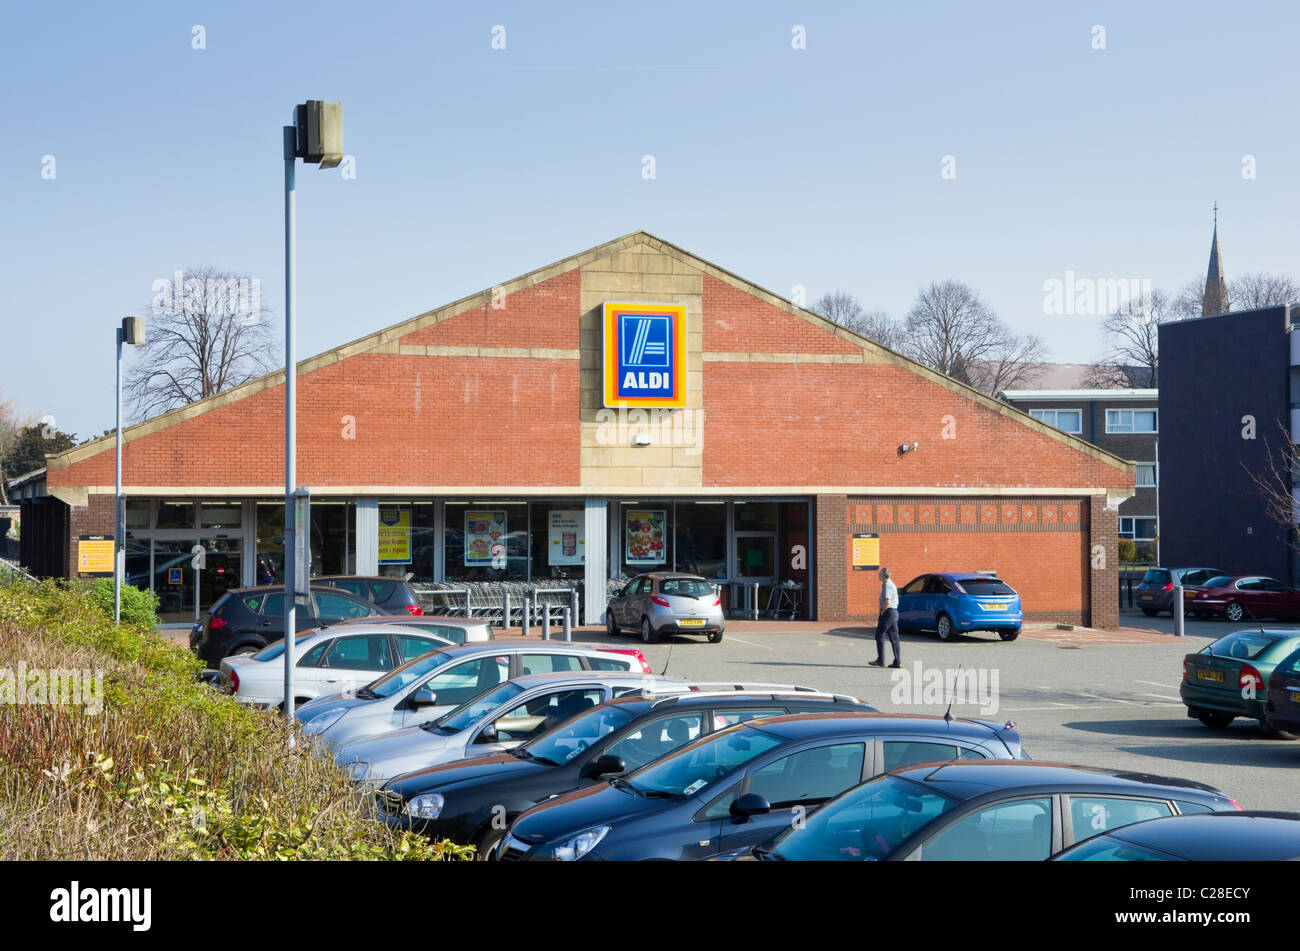 Aldi magasin avant avec des voitures à l'extérieur parking supermarché  vendant à un prix avantageux. Bangor, Gwynedd, au nord du Pays de Galles,  Royaume-Uni, Angleterre Photo Stock - Alamy